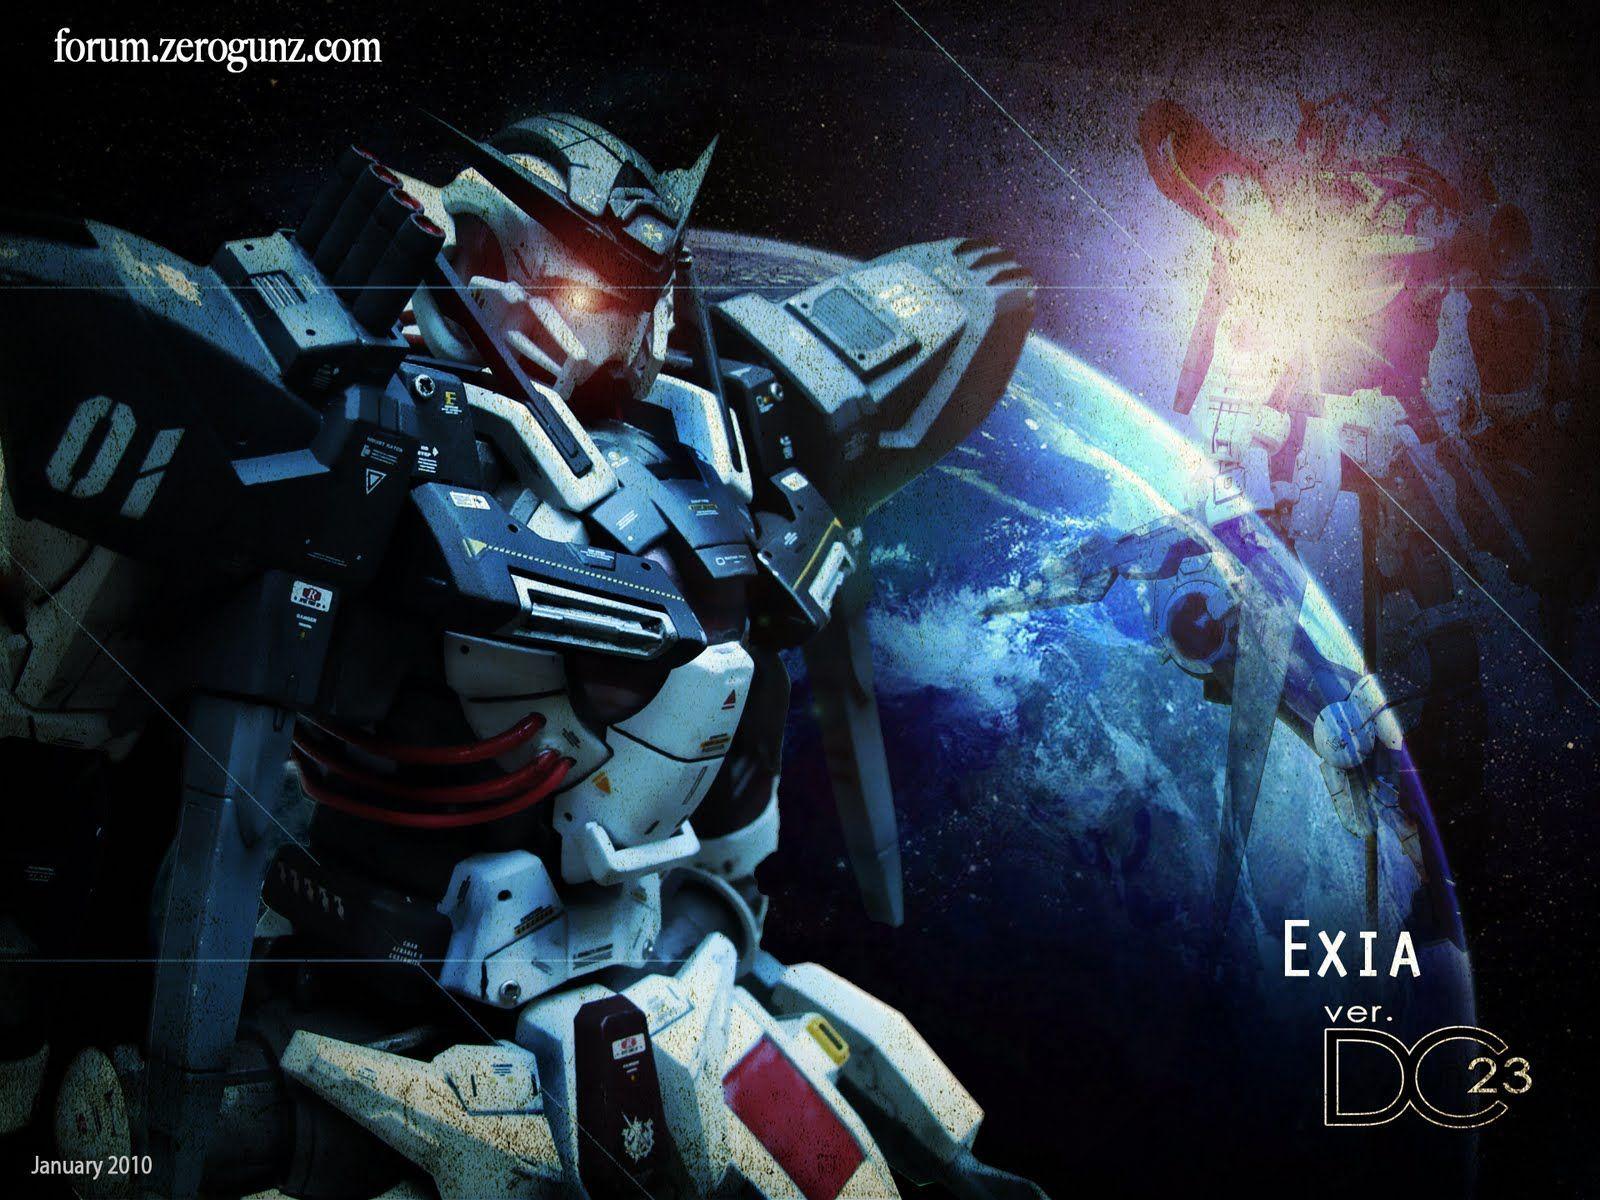 Gundam Exia Wallpaper PC Gundam Exia Top Image. HD Wallpaper